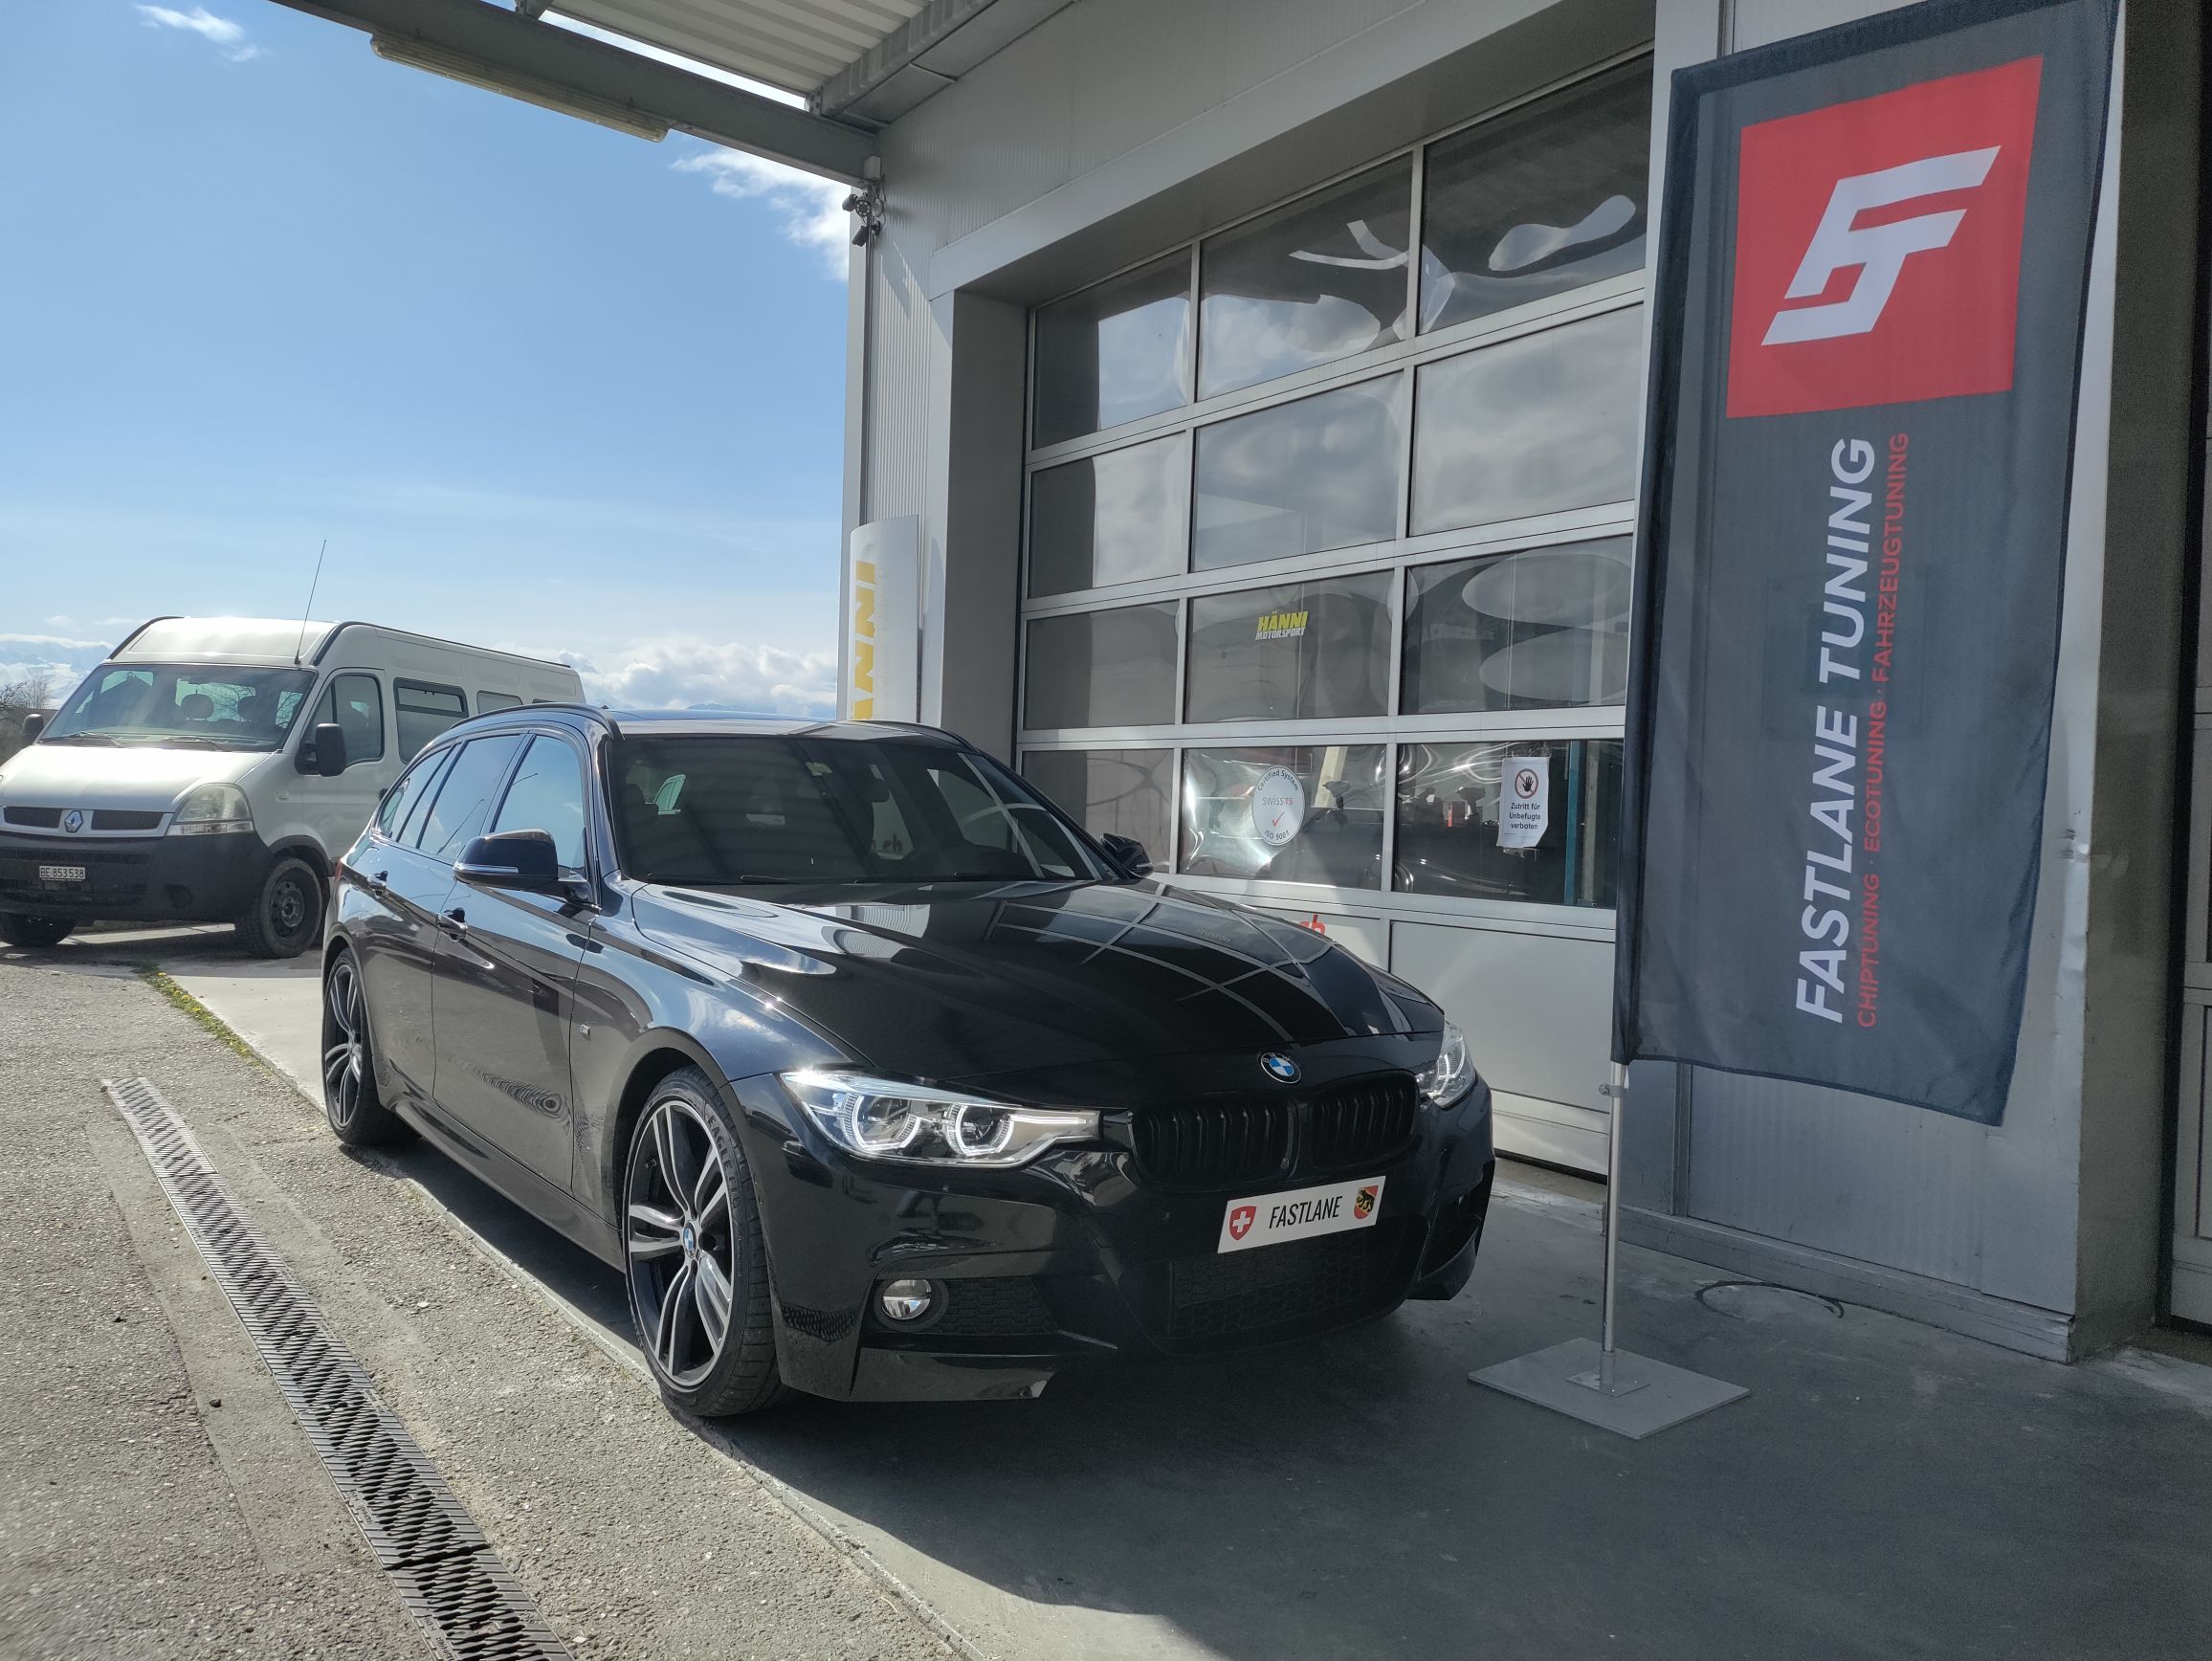 Ein schwarzer BMW F Series 340i Kombi mit B58 Motor steht vor der Garage neben der Fastlane Tuning Schweiz Flagge.